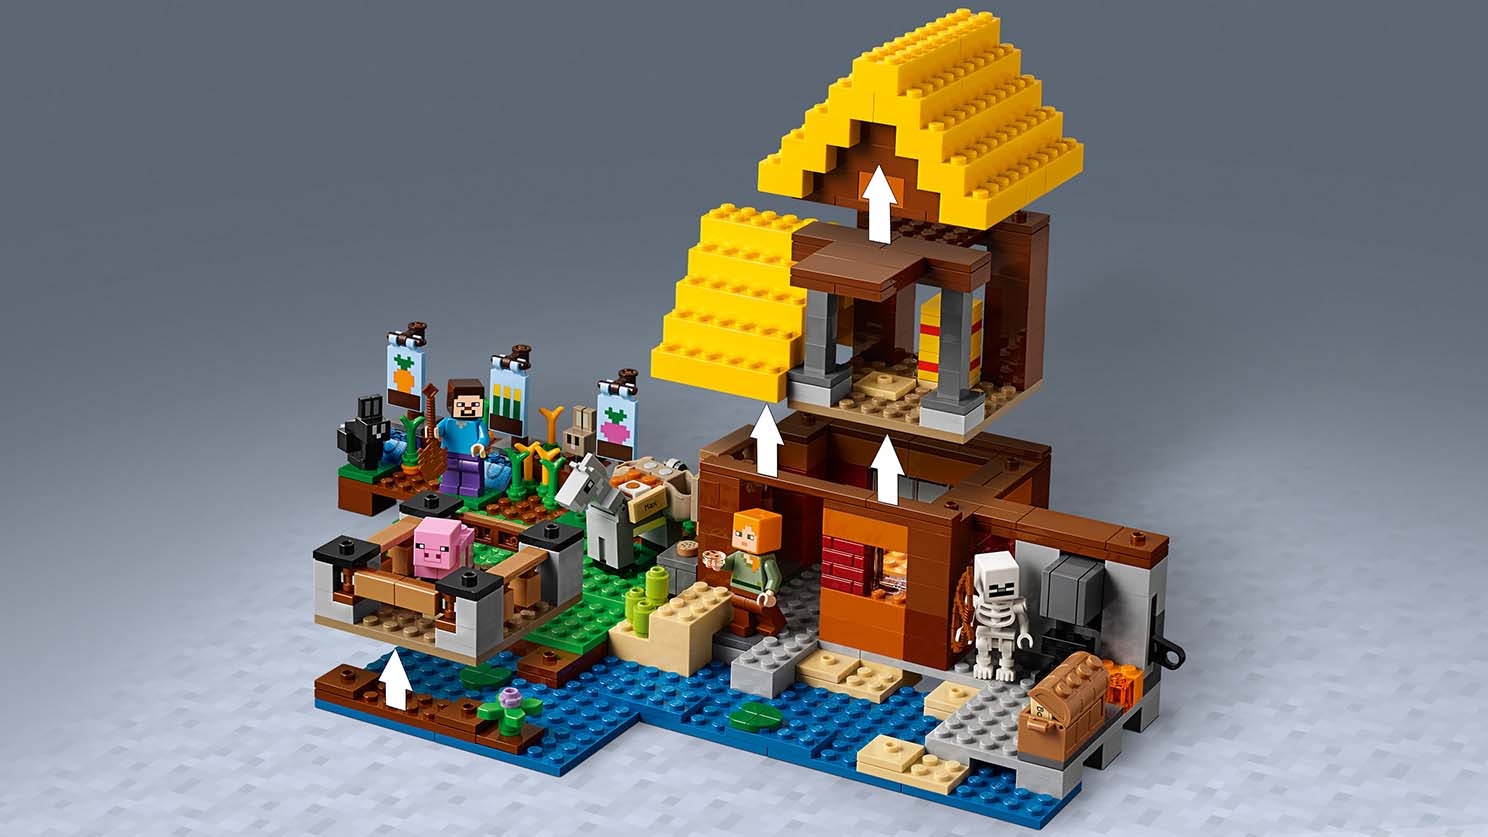 畑のコテージ 21144 - レゴ®マインクラフト セット - LEGO.comキッズ